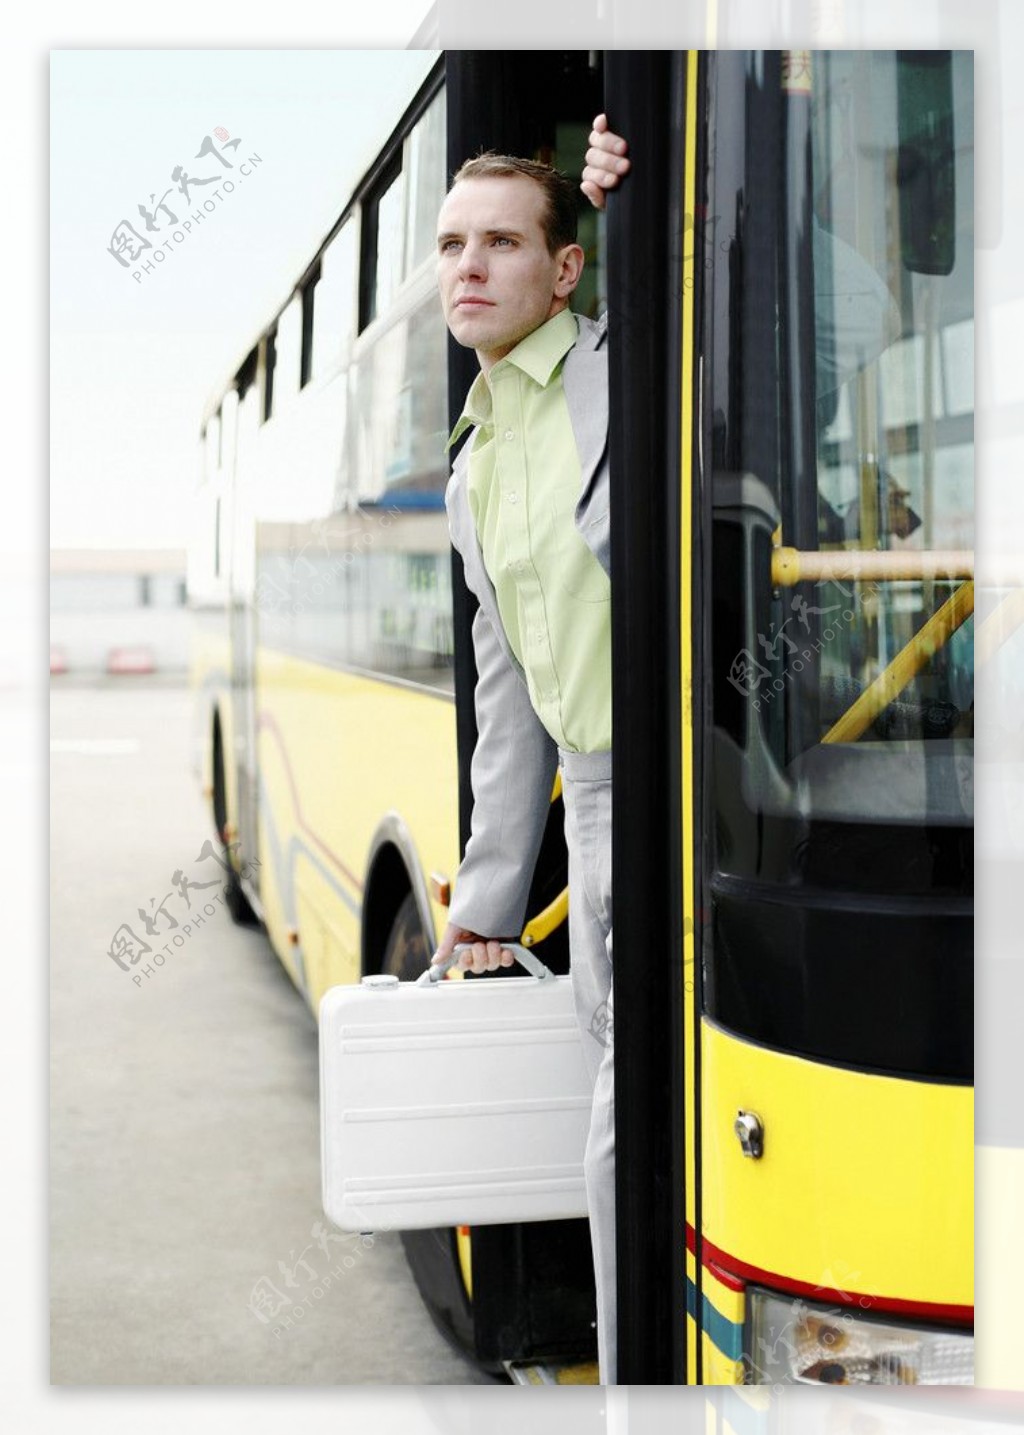 下公交车的商务人物图片